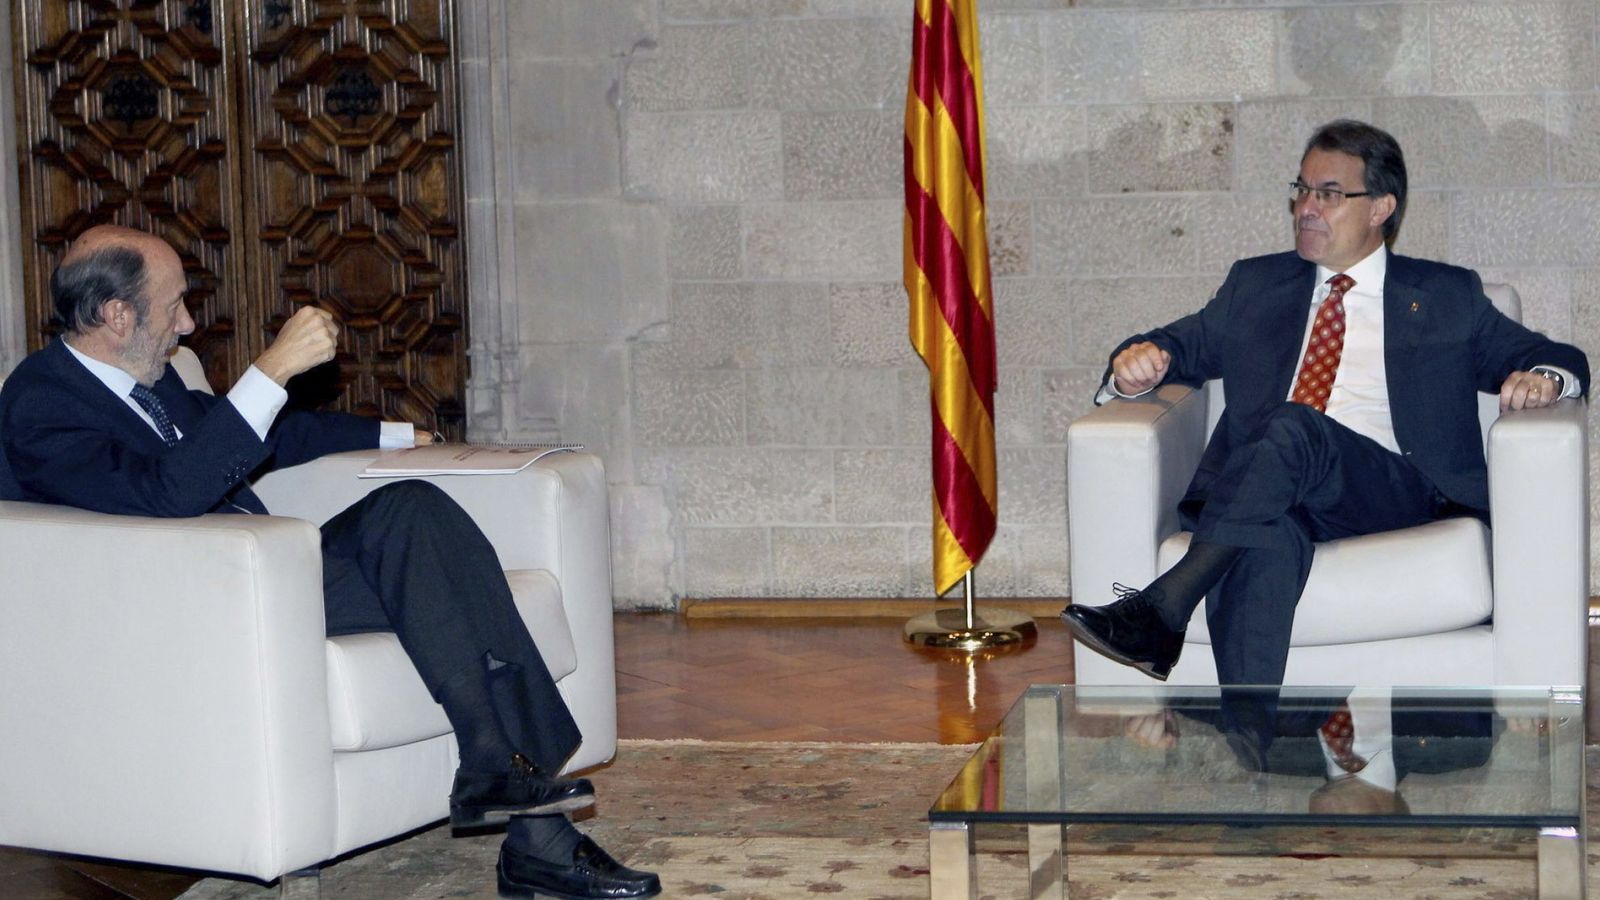 Foto: El presidente de la Generalitat, Artur Mas, y el exsecretario general del PSOE, Alfredo Pérez Rubalcaba, en una imagen de archivo. (Efe)